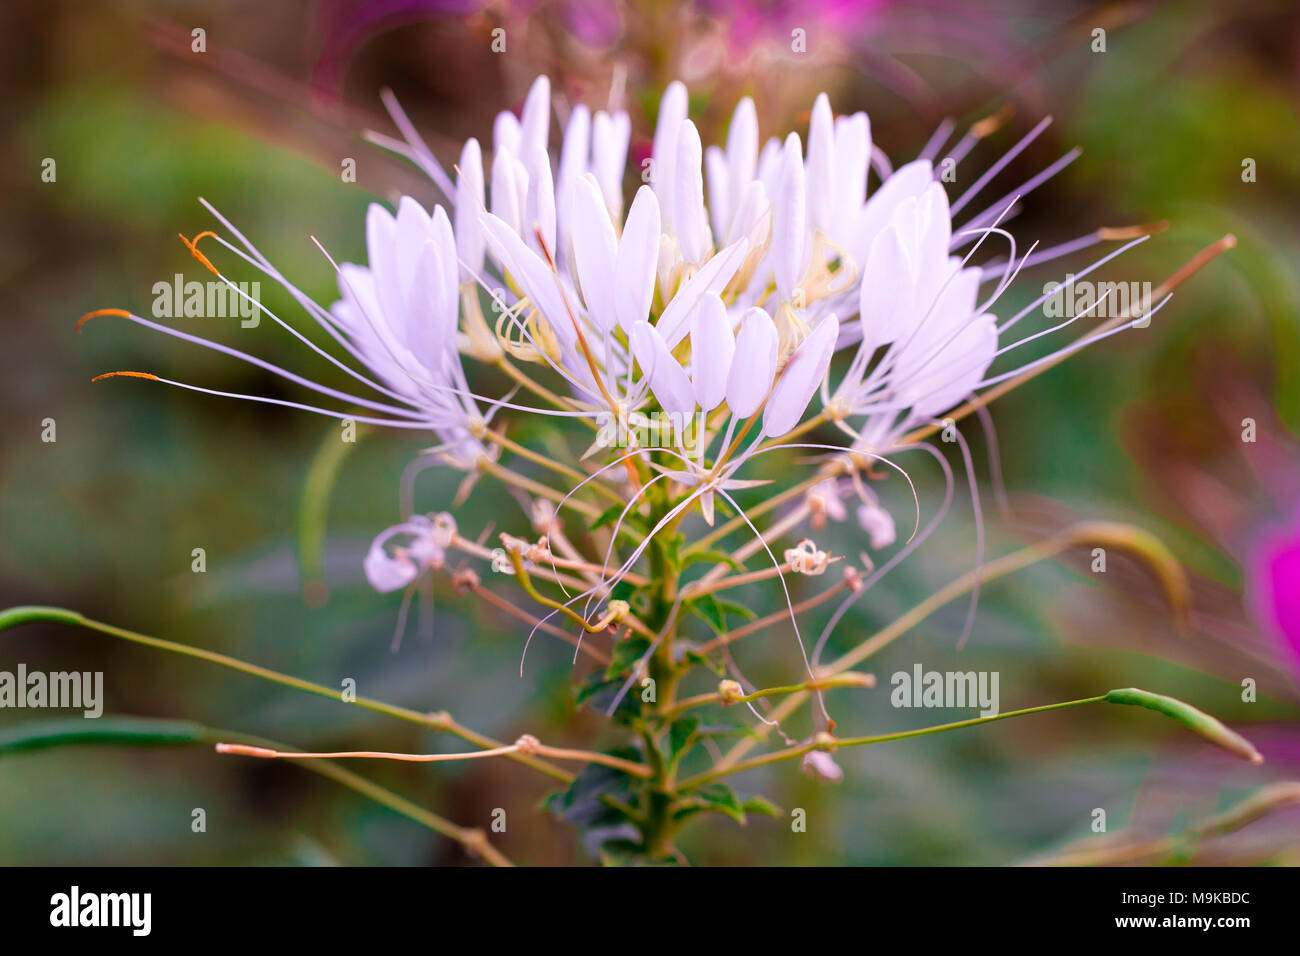 Rosa e wihite Spider flower ,Cleome hassleriana isolare in sping sumer dopo la pioggia al mattino, costo tecnico-up. Foto Stock